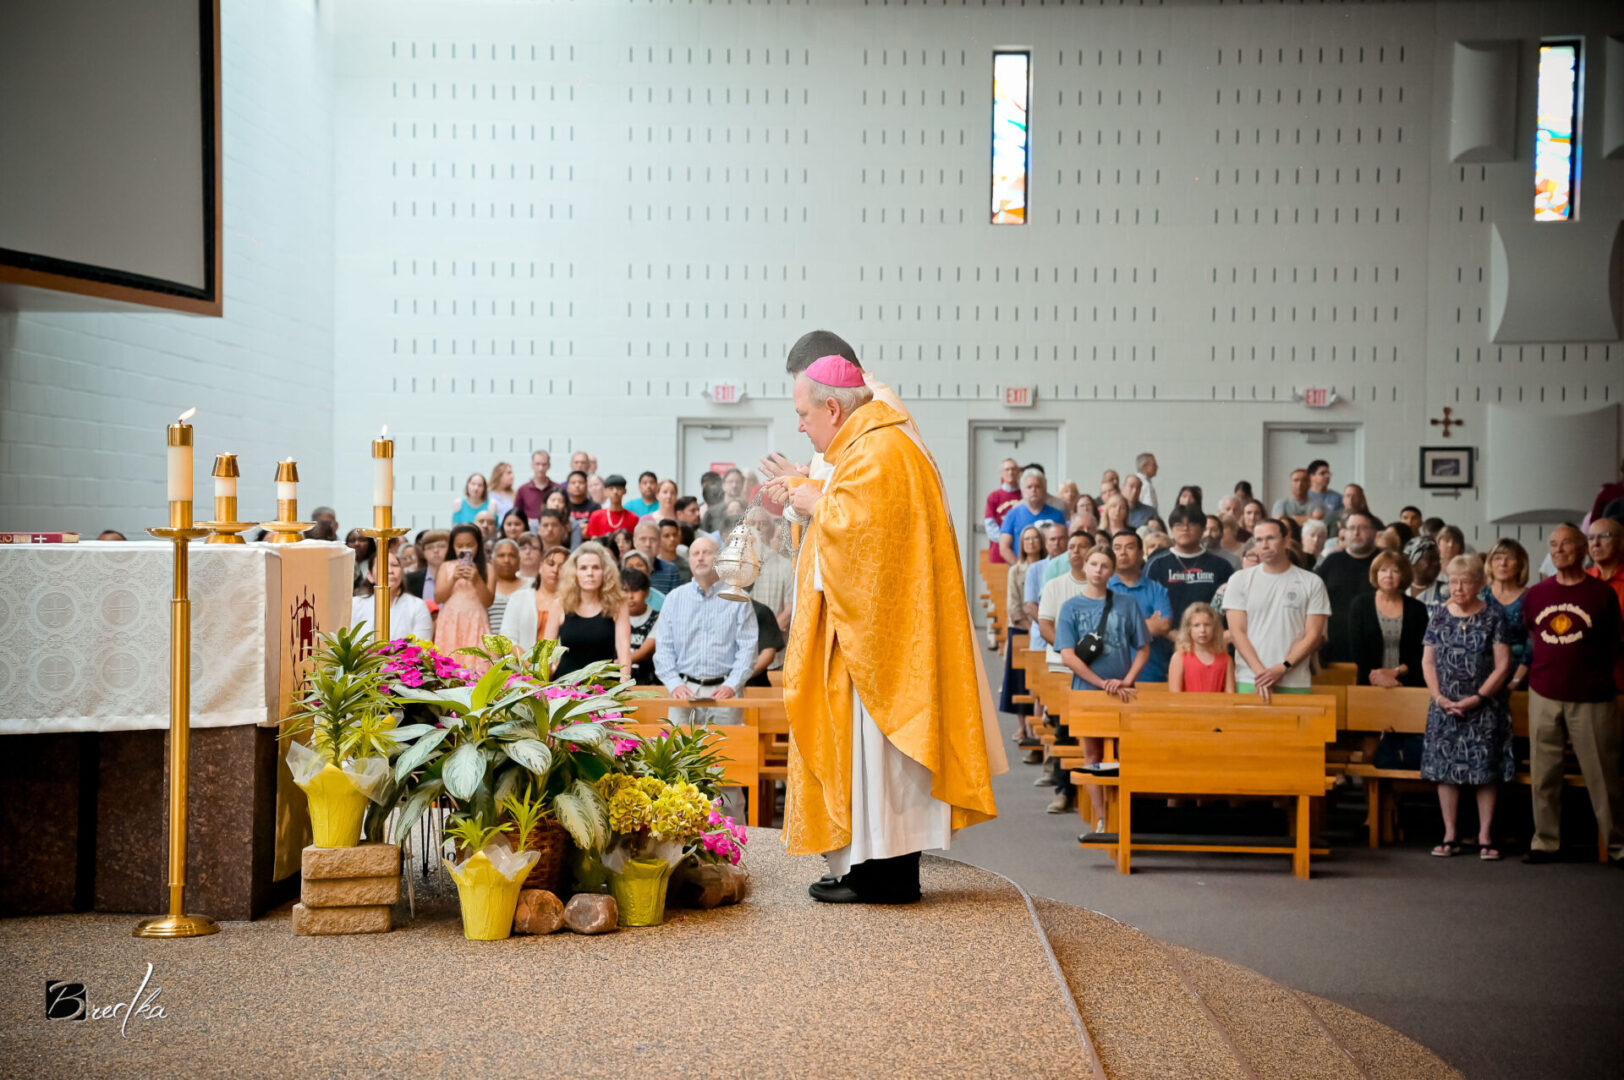 Bishop in yellow robe censing congregation.